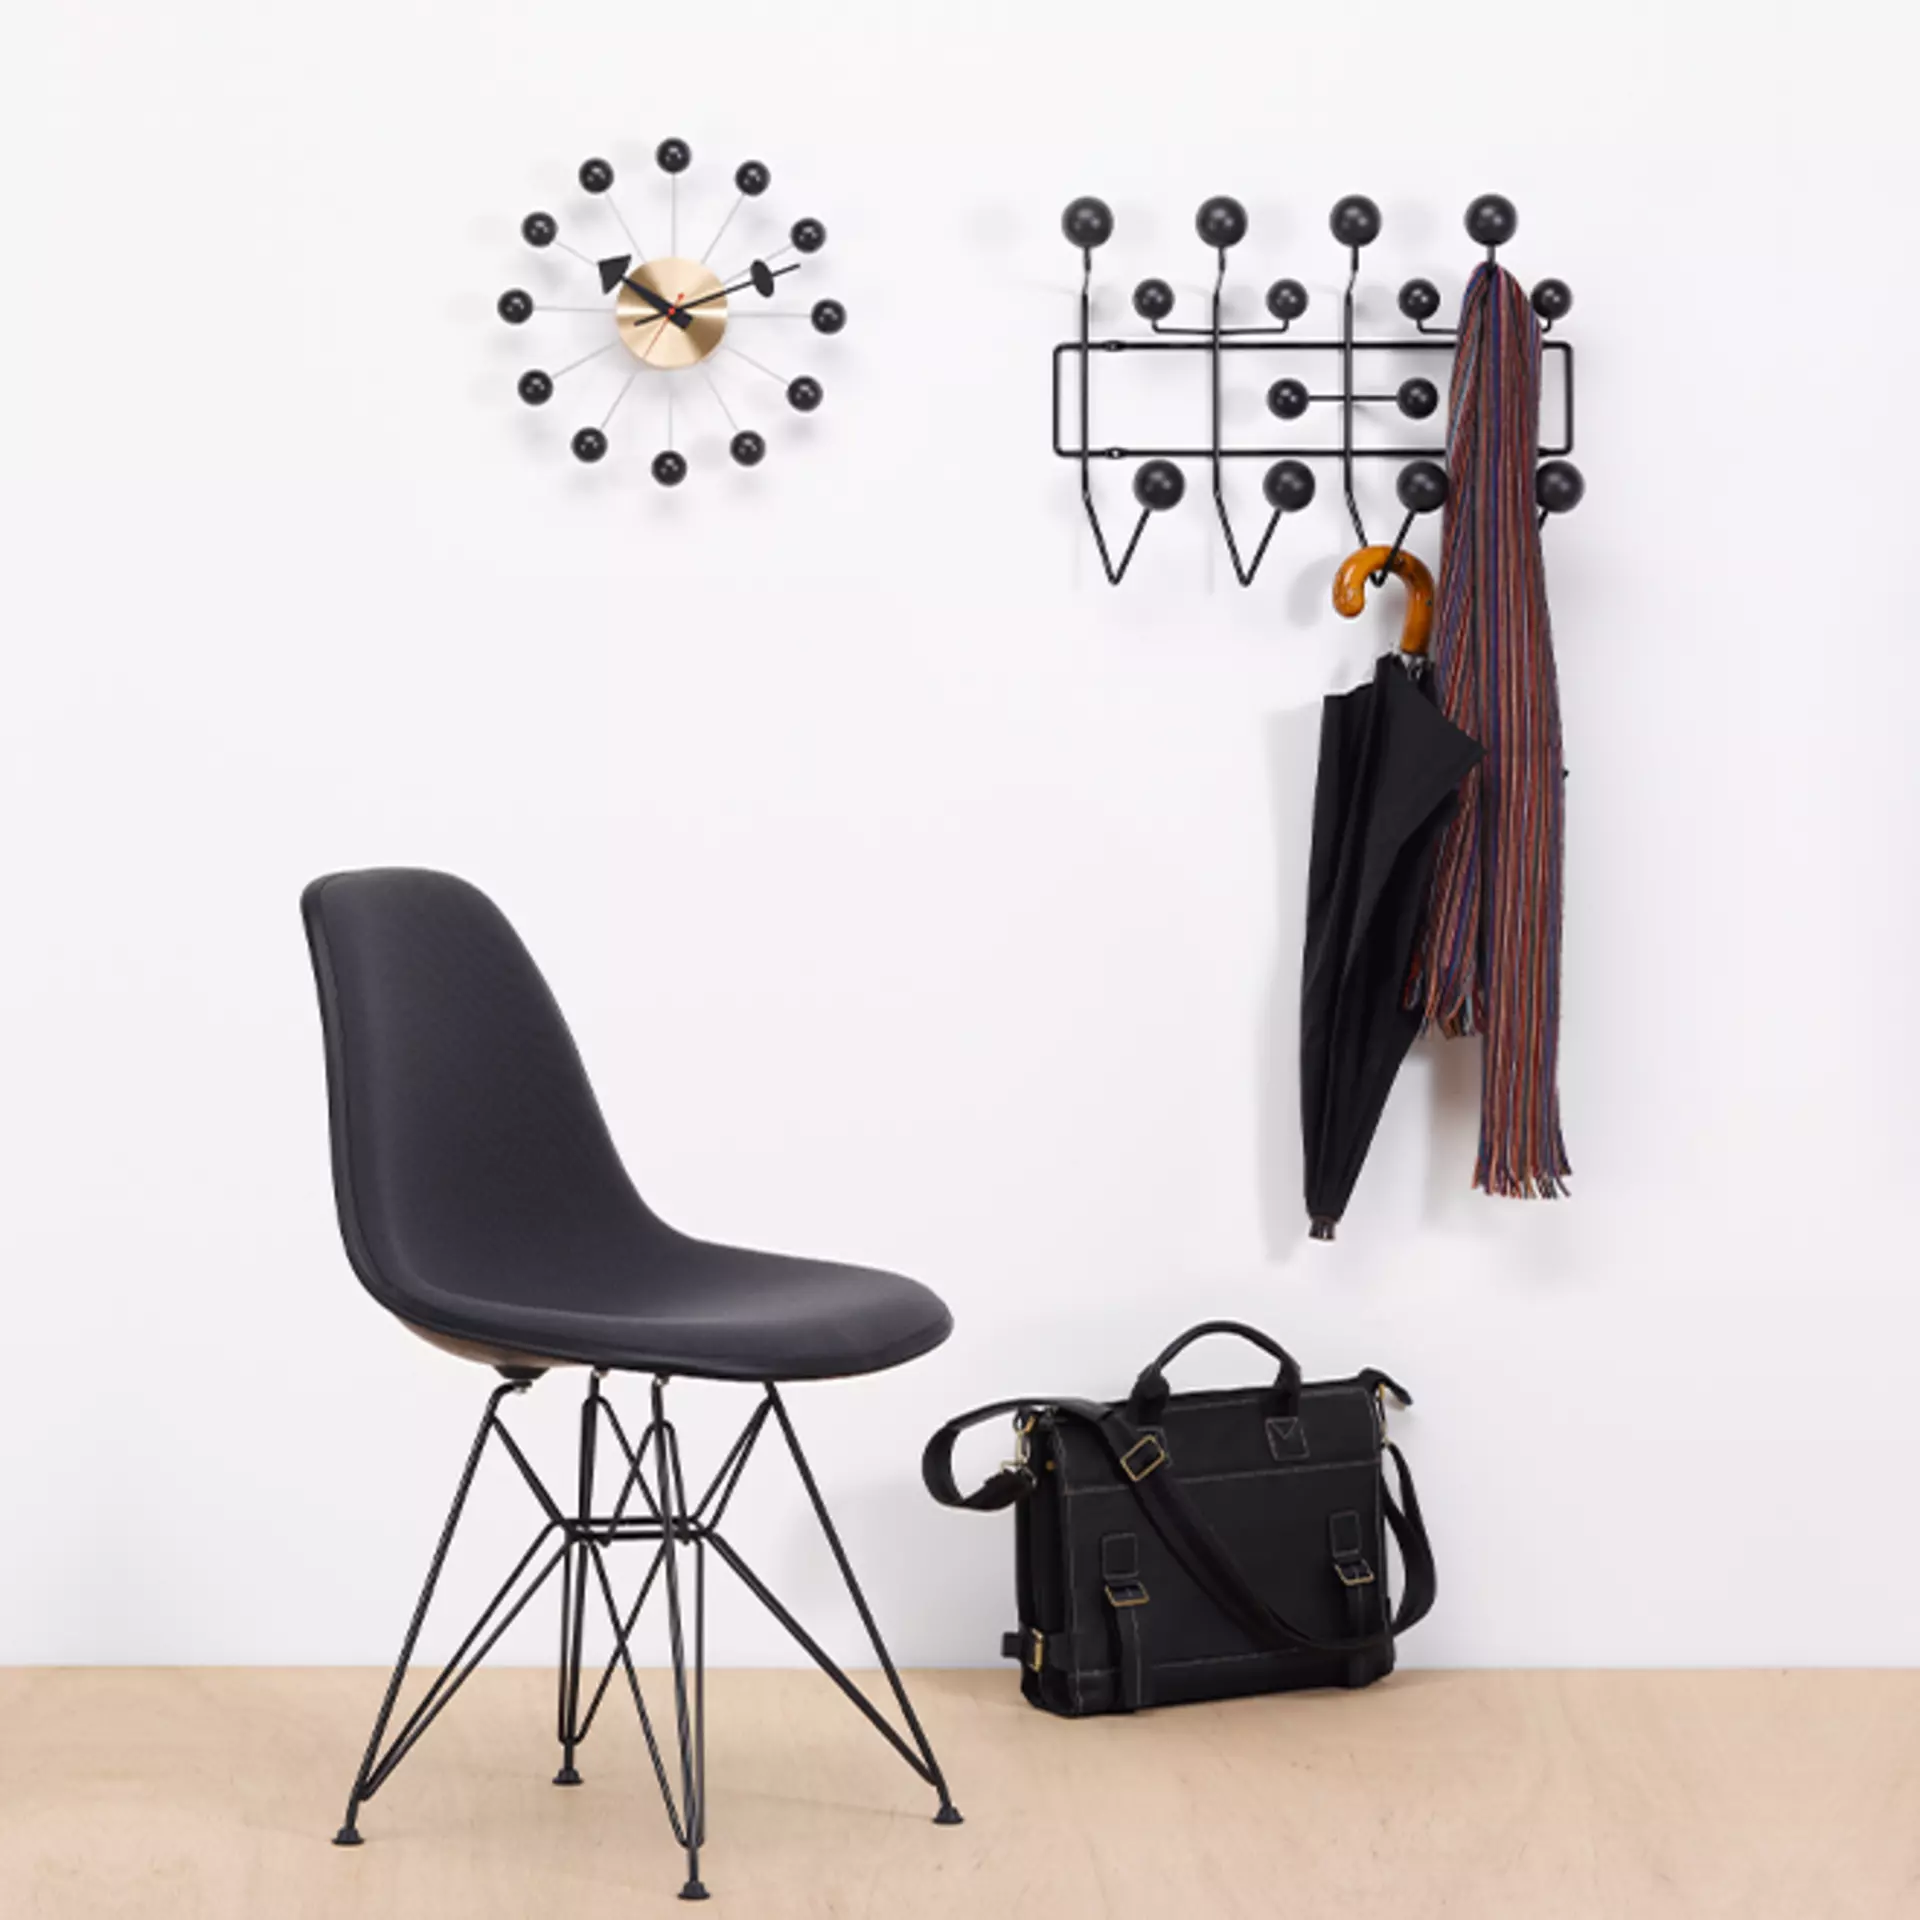 Ikonische Vitra Accessoires - die Wall Clock Ball Clock und die Garderobe Hang it all